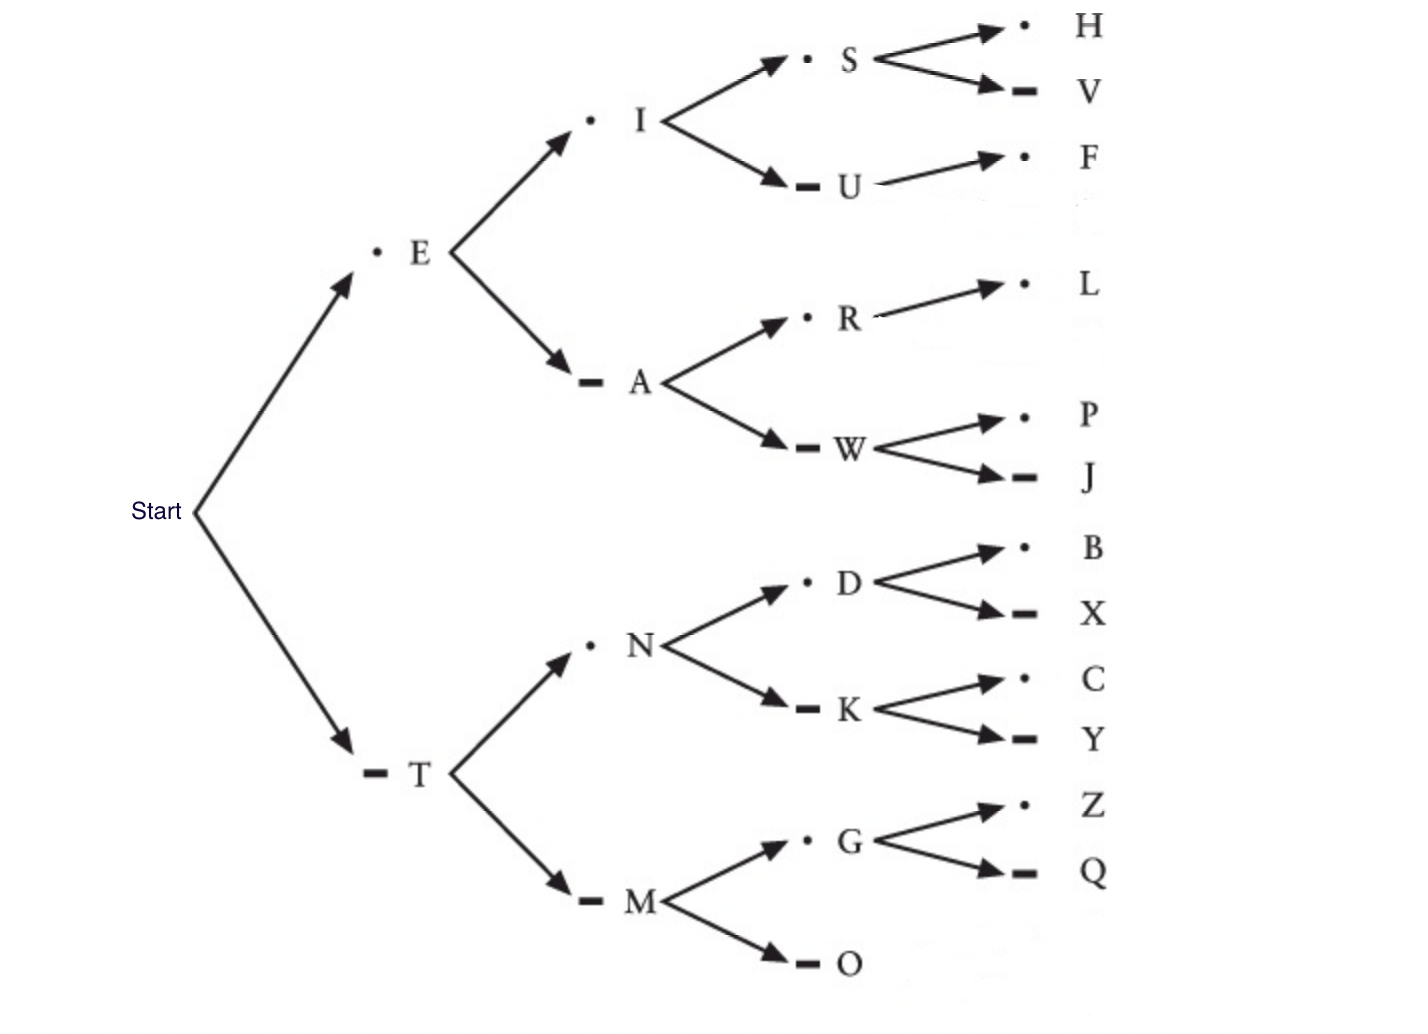 Morse Code Binary Search Tree